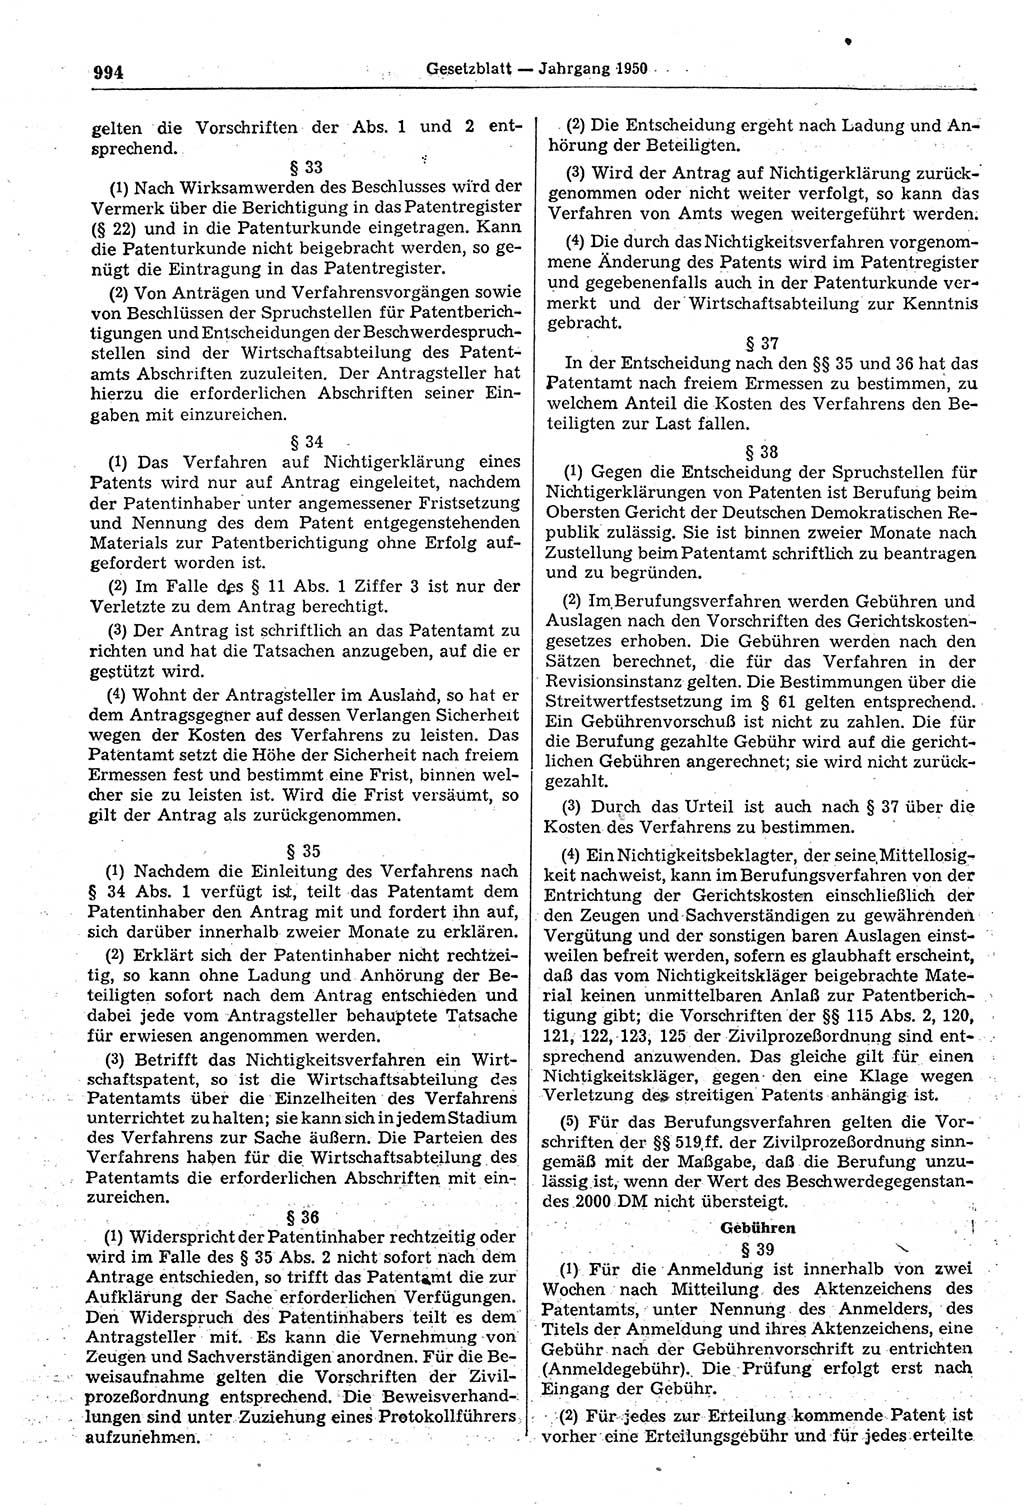 Gesetzblatt (GBl.) der Deutschen Demokratischen Republik (DDR) 1950, Seite 994 (GBl. DDR 1950, S. 994)